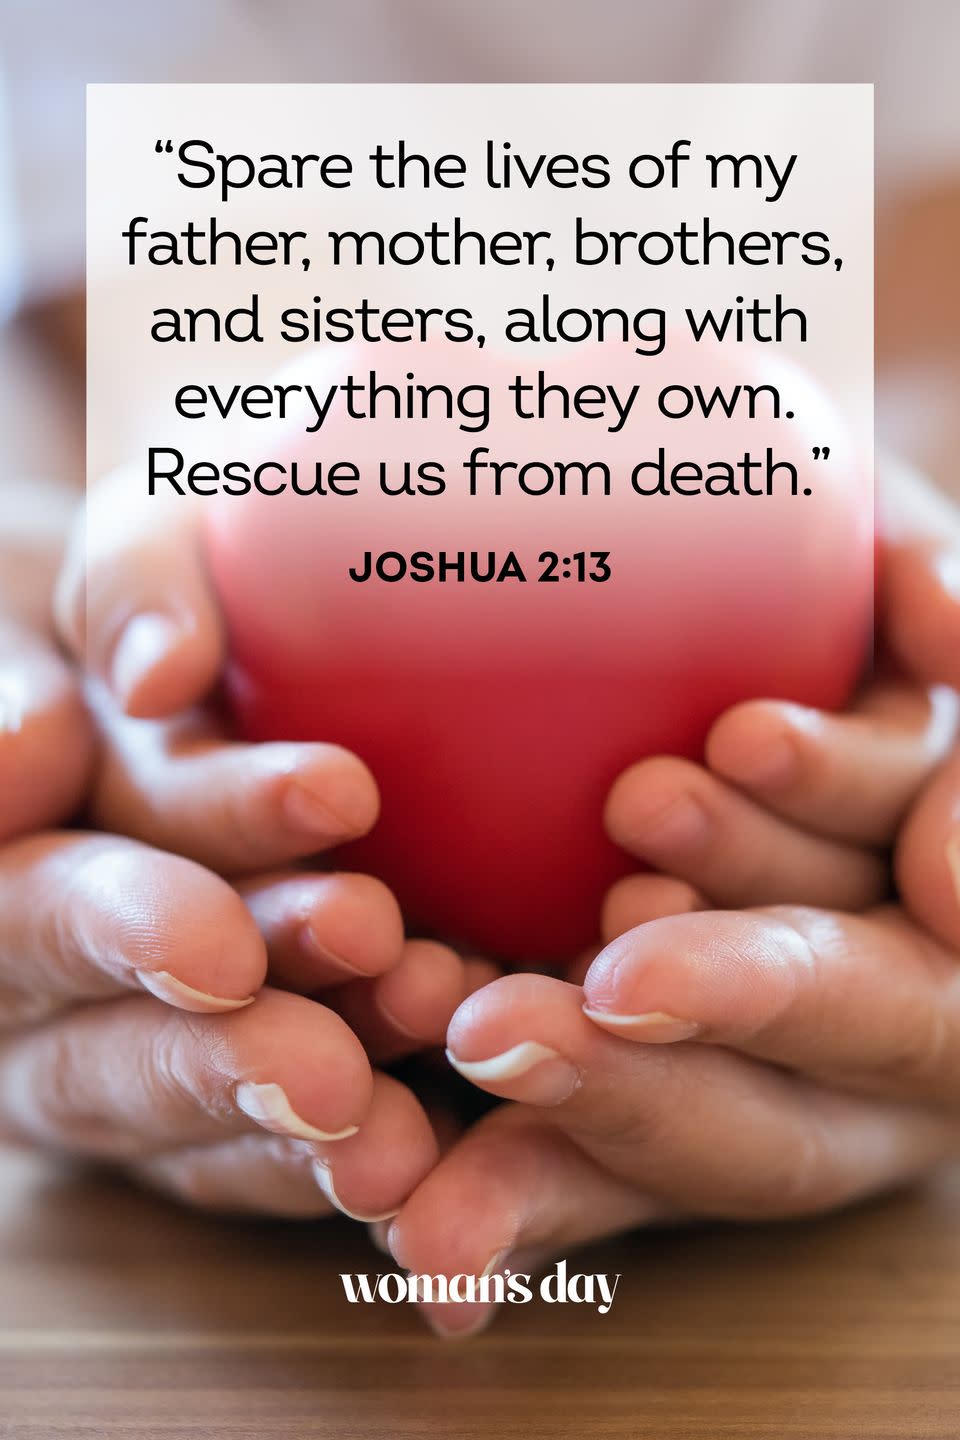 3) Joshua 2:13